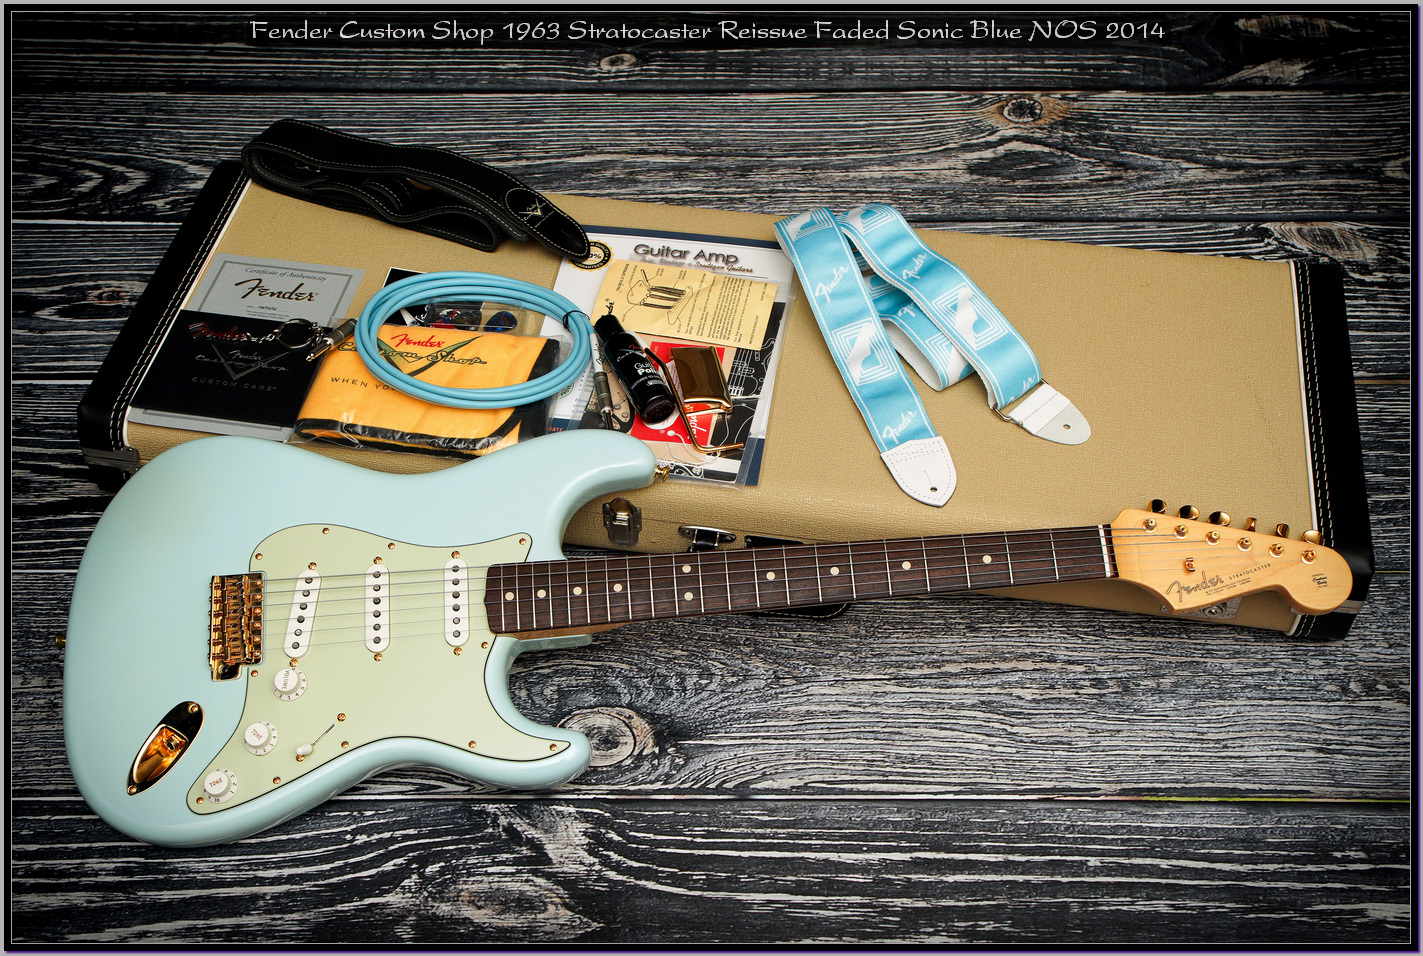 Fender Custom Shop 1963 Stratocaster Reissue Faded Sonic Blue NOS 2014 04_x1400.jpg